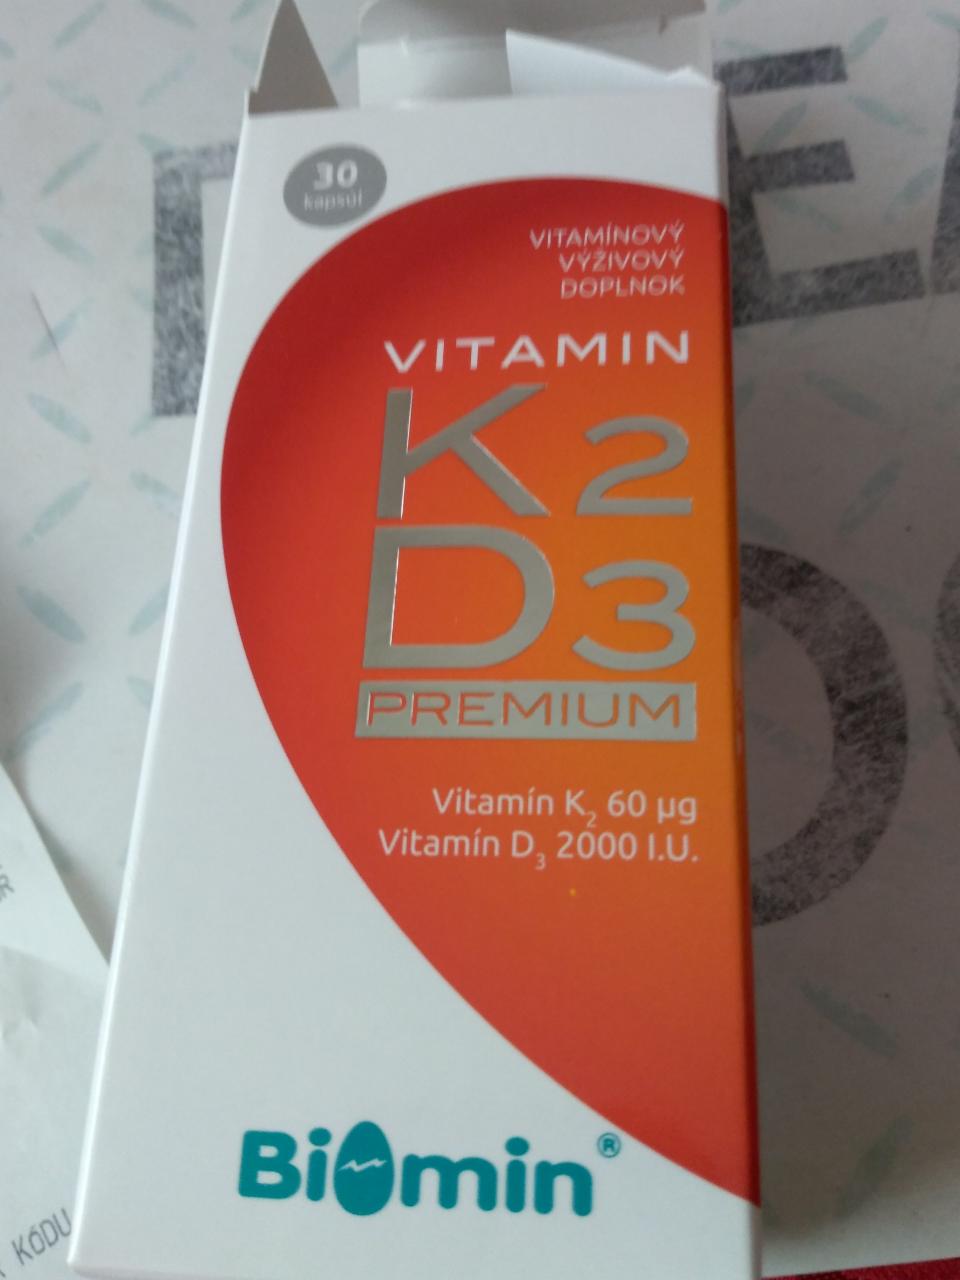 Fotografie - Vitamin K2 D3 Pemium Biomin